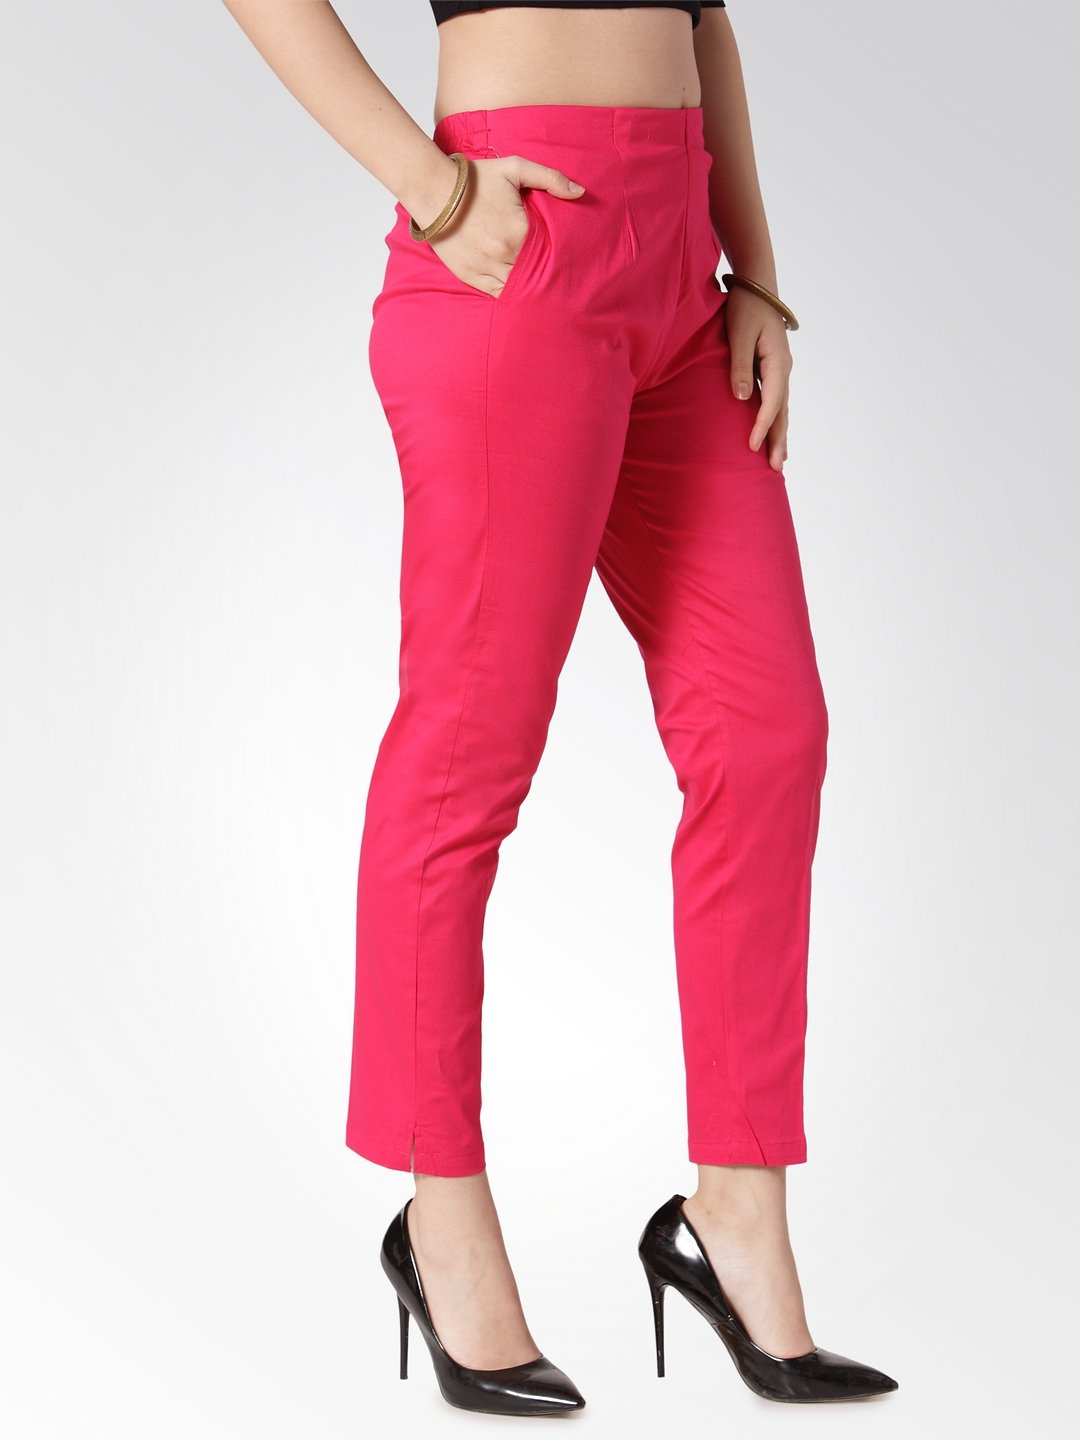 Jompers Women Pink Smart Slim Fit Solid Regular Trousers - Distacart